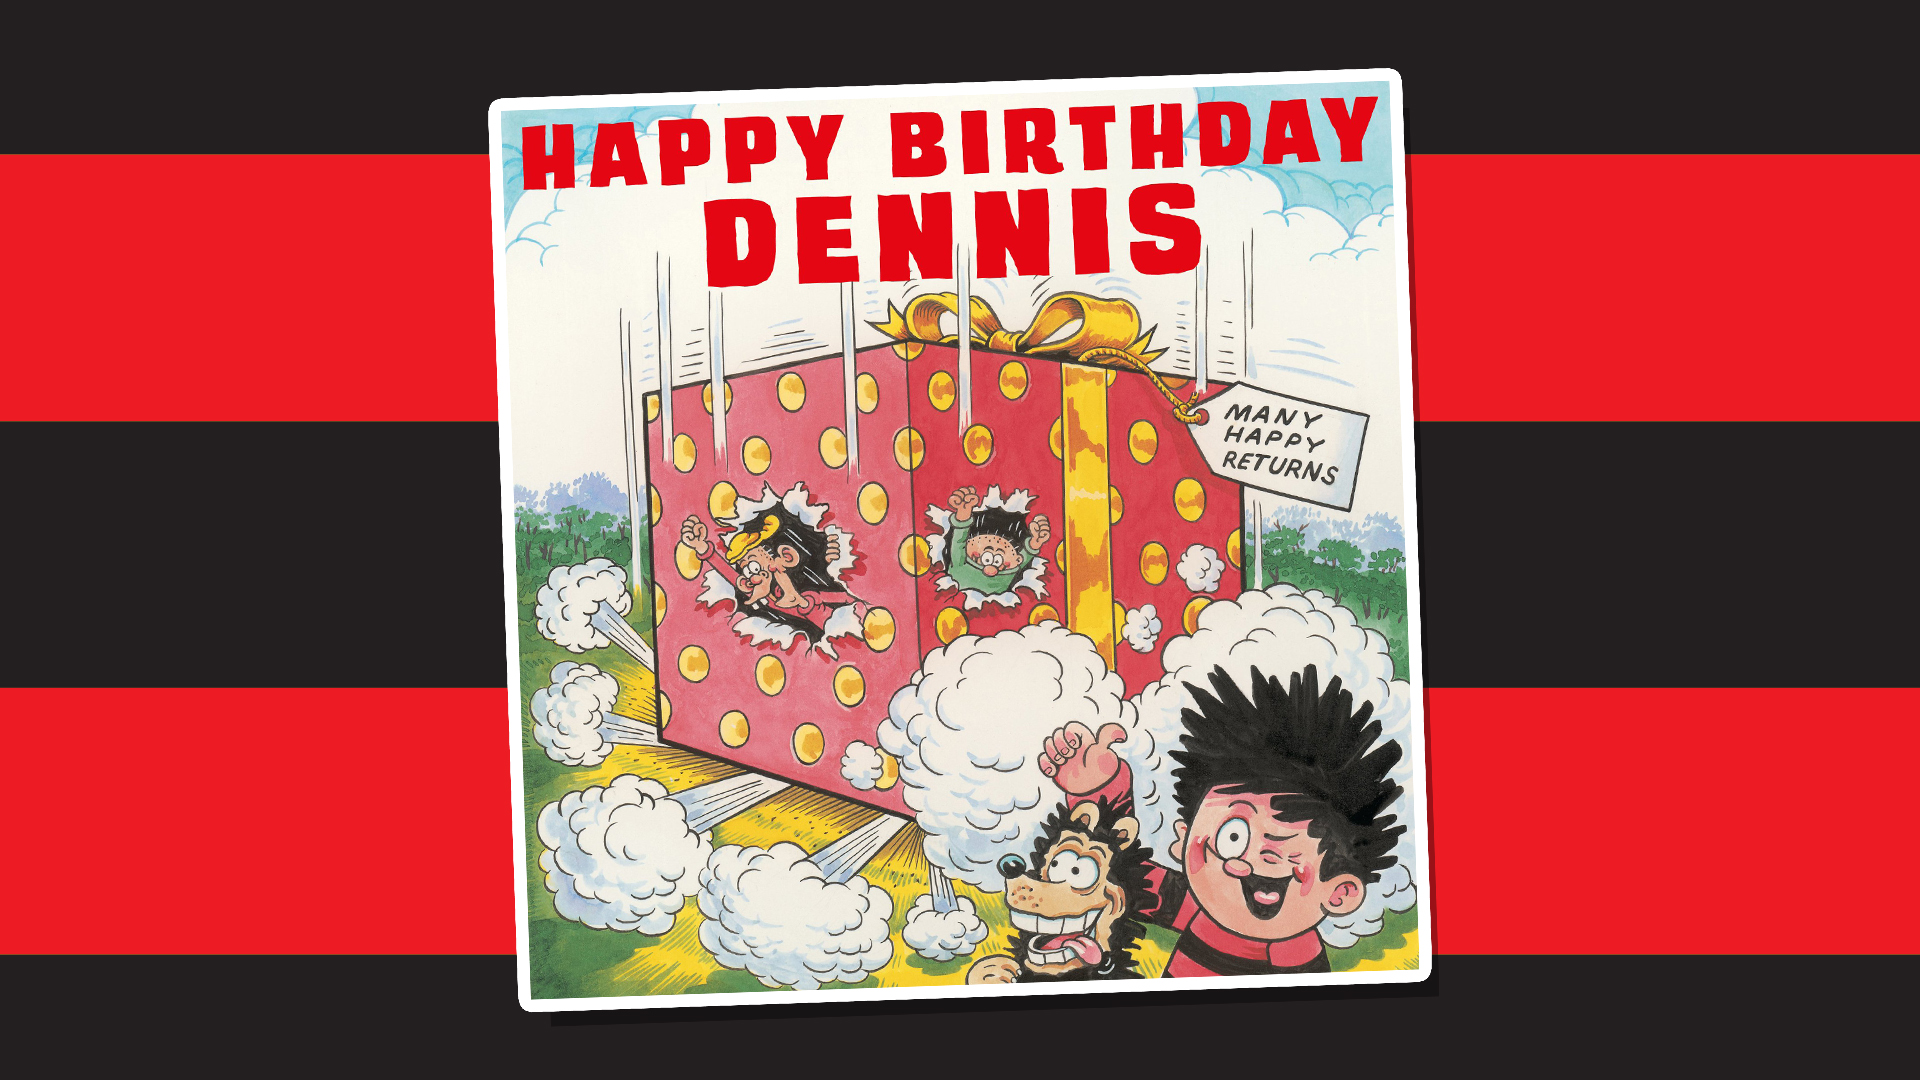 Dennis birthday wishes